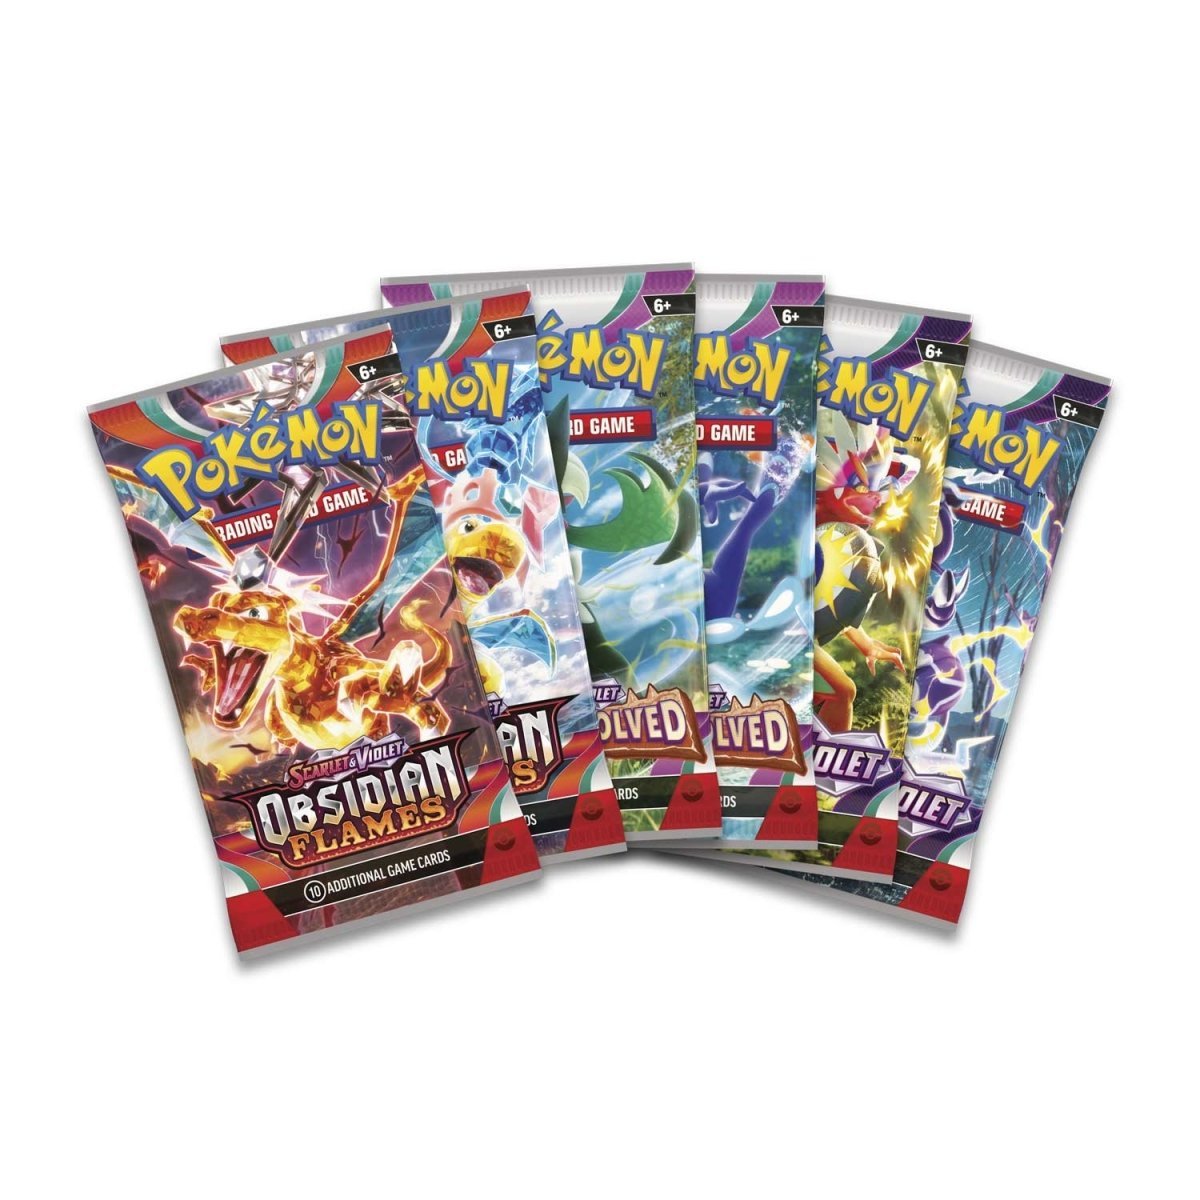 Pokémon TCG: Charizard ex Premium Collection - PokeRvmCollection Box